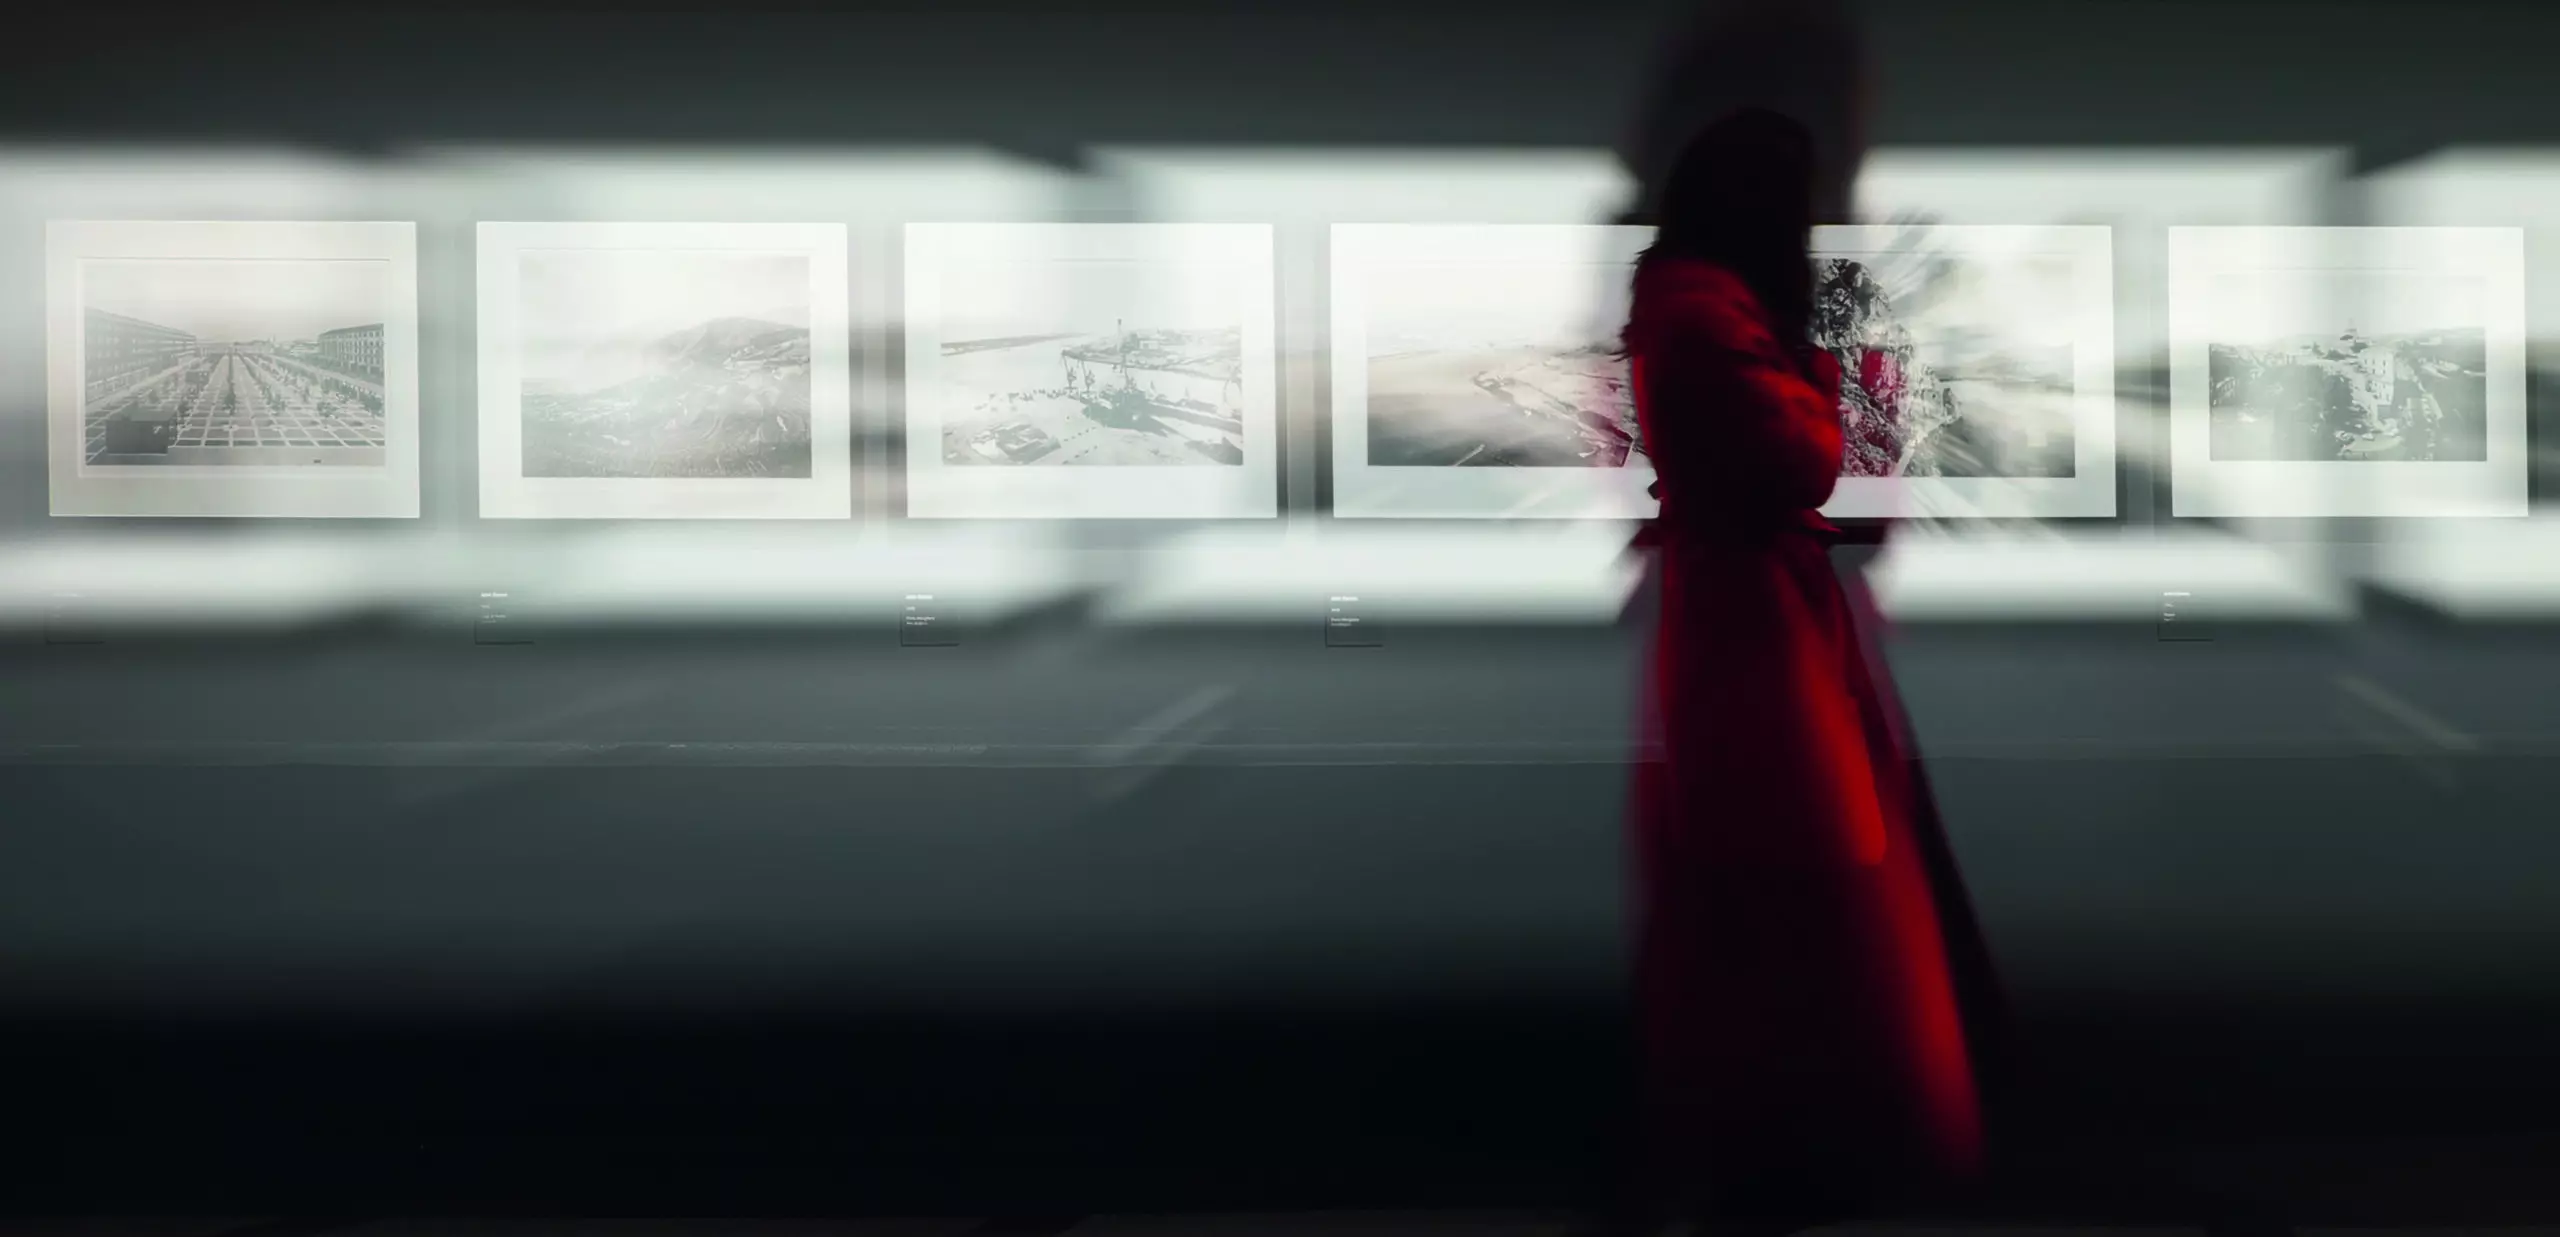 Wandbild (5665) The woman with teh red coat by Bartagnan,1x.com präsentiert: Aktion-Bewegung,Menschen,Kreatives,Details und Strukturen,Abstrakt,Frauen,Sonstiges Kreatives,Architekturdetails